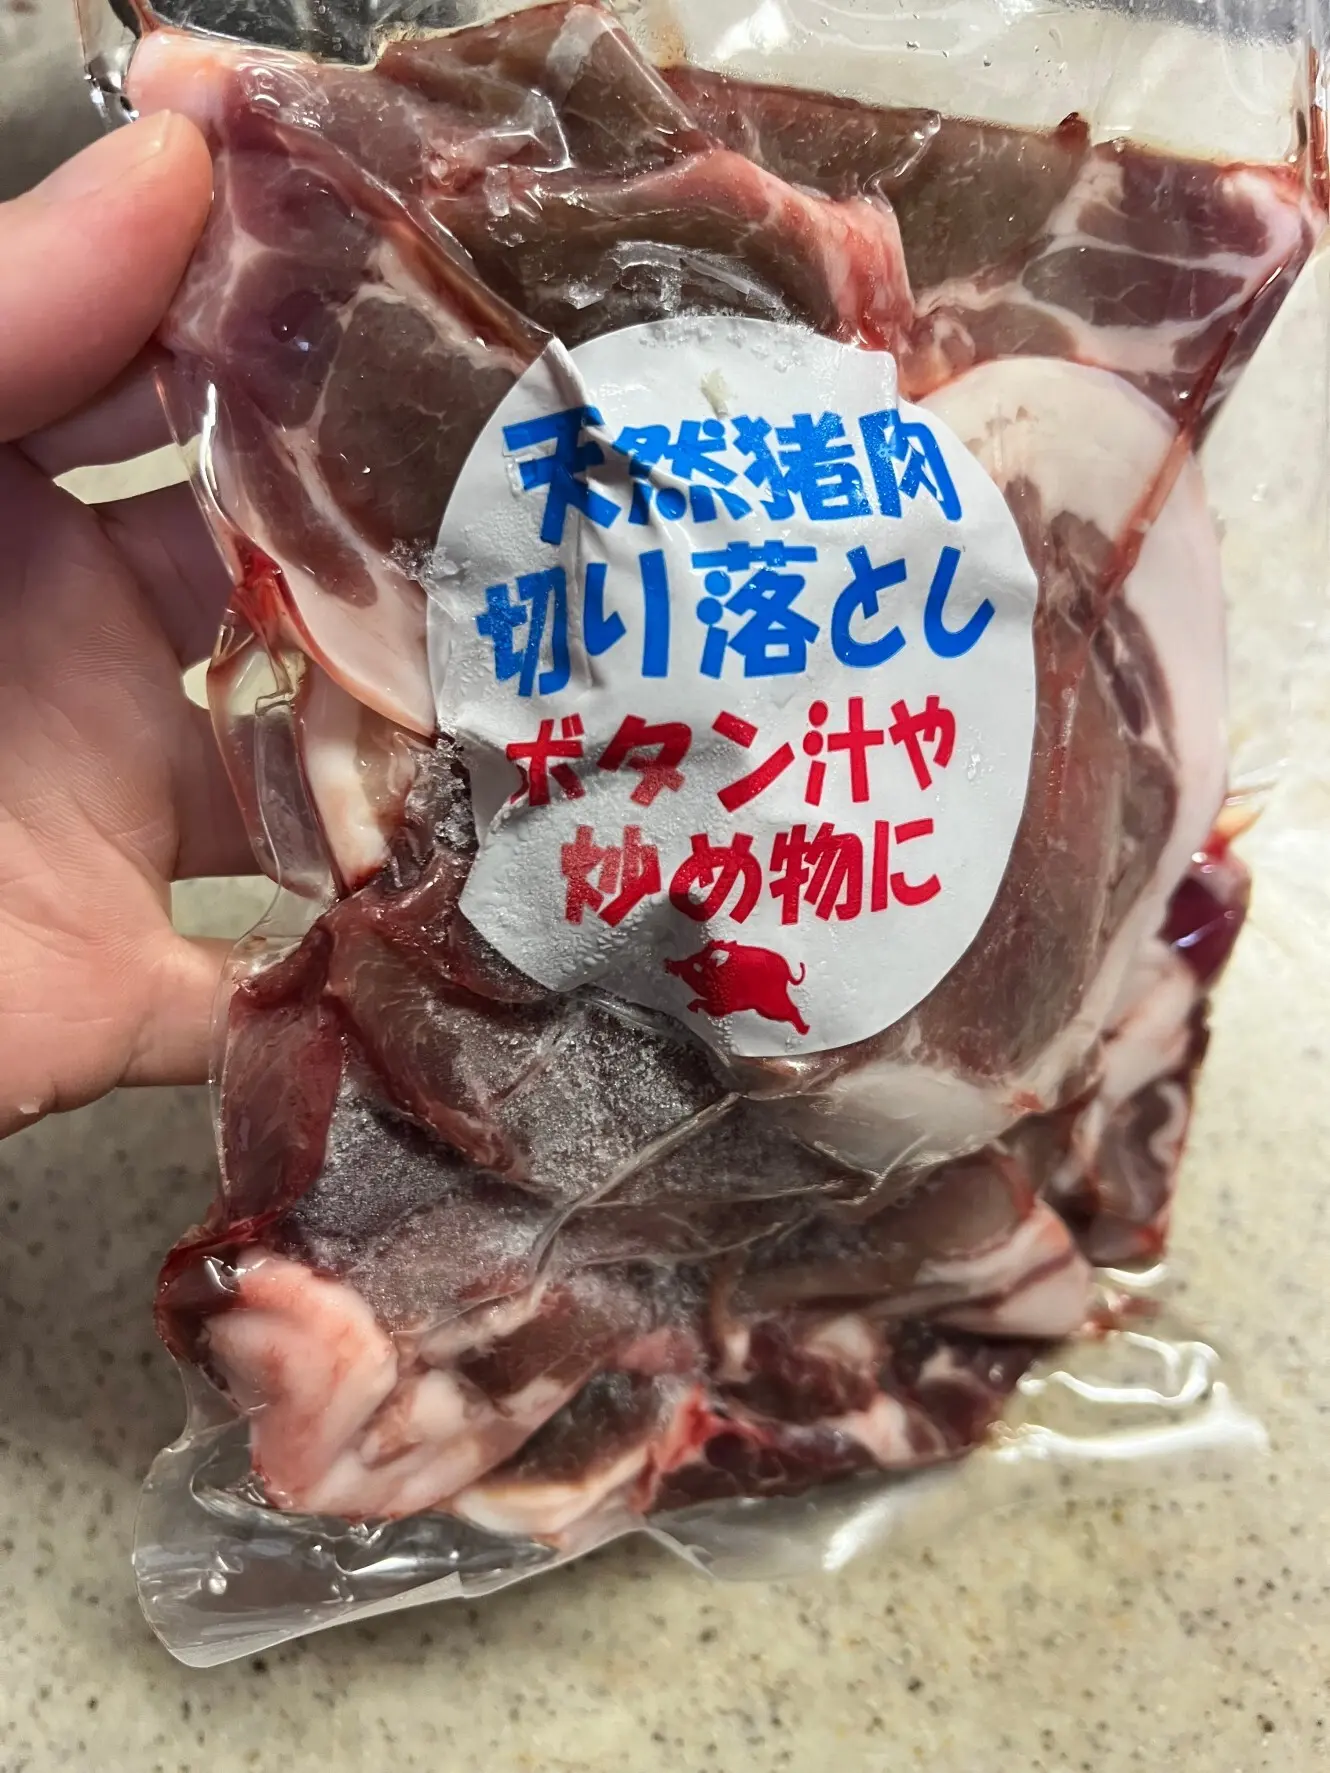 天川村の道の駅で購入した天然猪肉。とっても良い品でした！